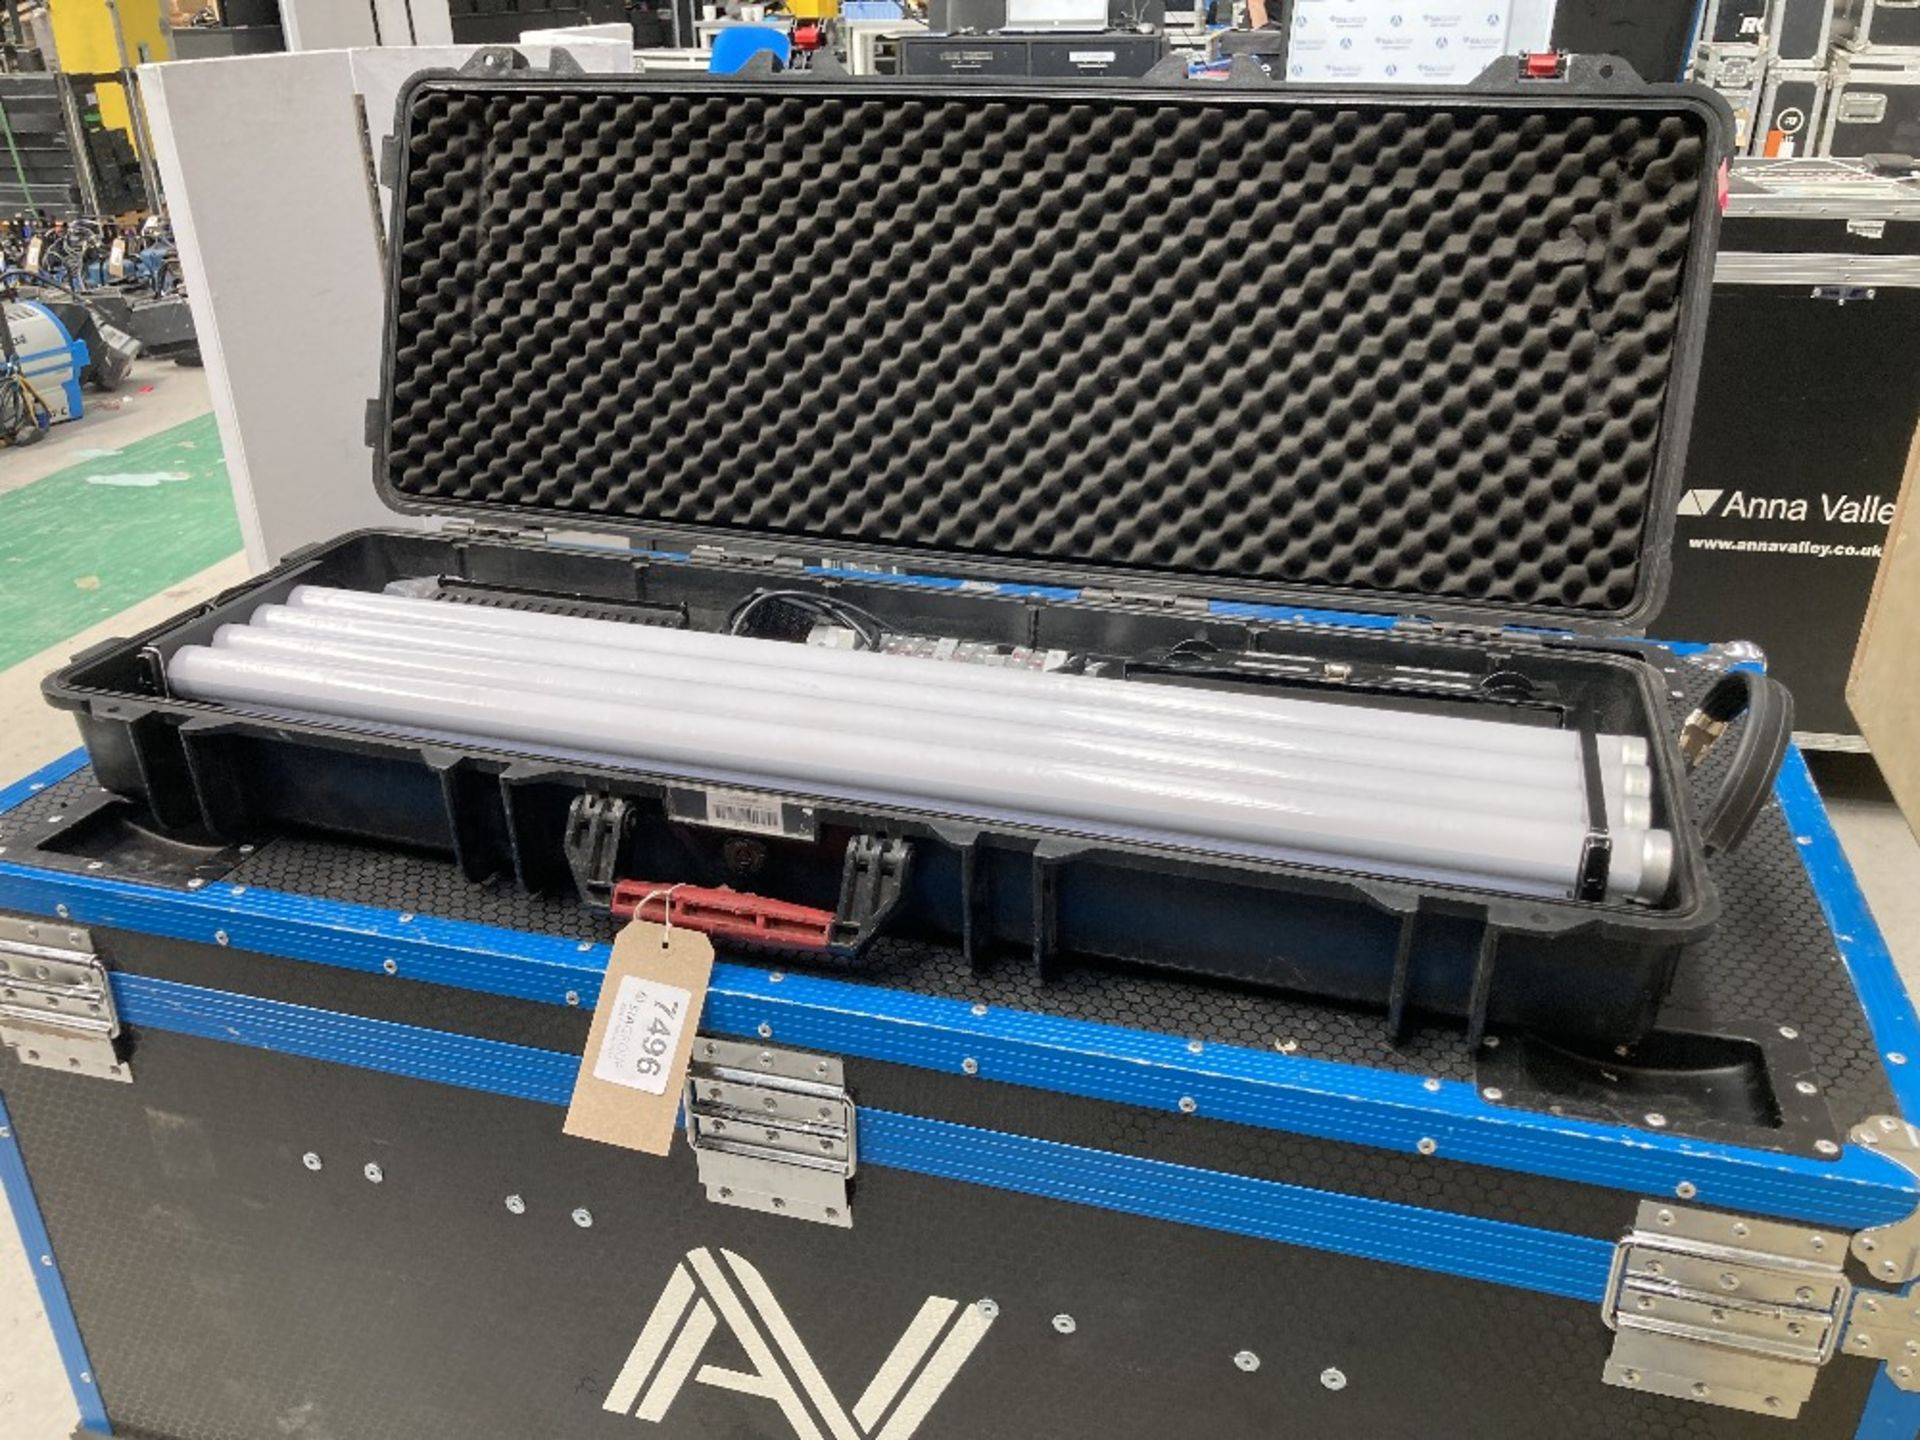 Astera AX1 Tubes 8-Head Lighting Kit & Heavy Duty Peli Case